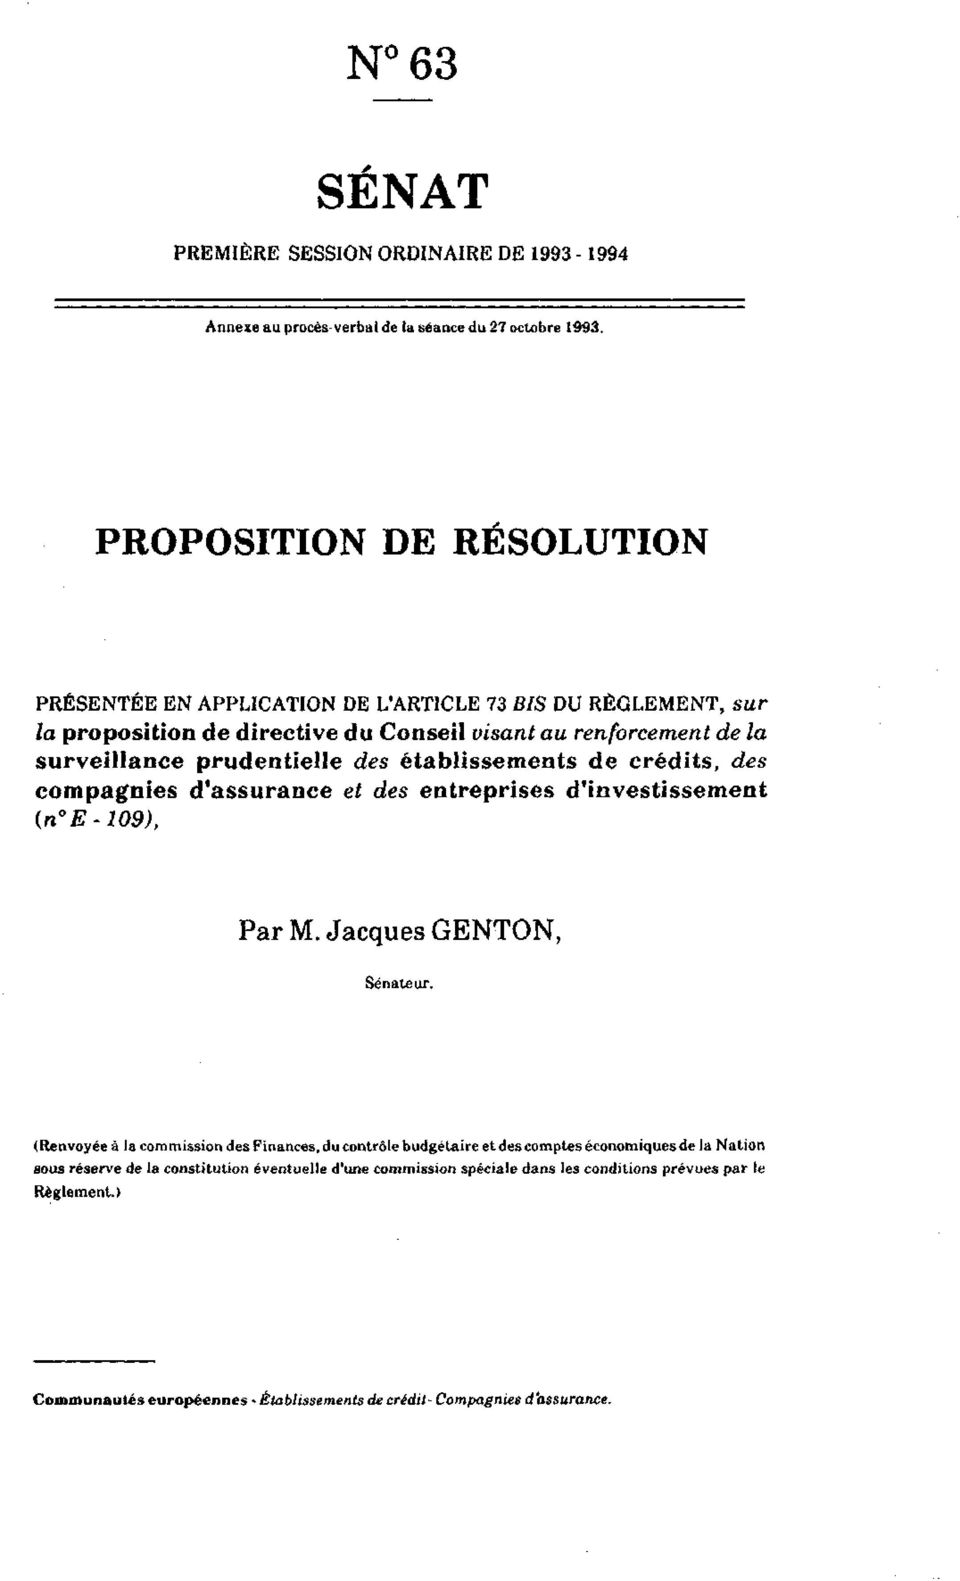 prudentielle des établissements de crédits, des compagnies d'assurance et des entreprises d'investissement (n E-109), Par M. Jacques GENTON, Sénateur.